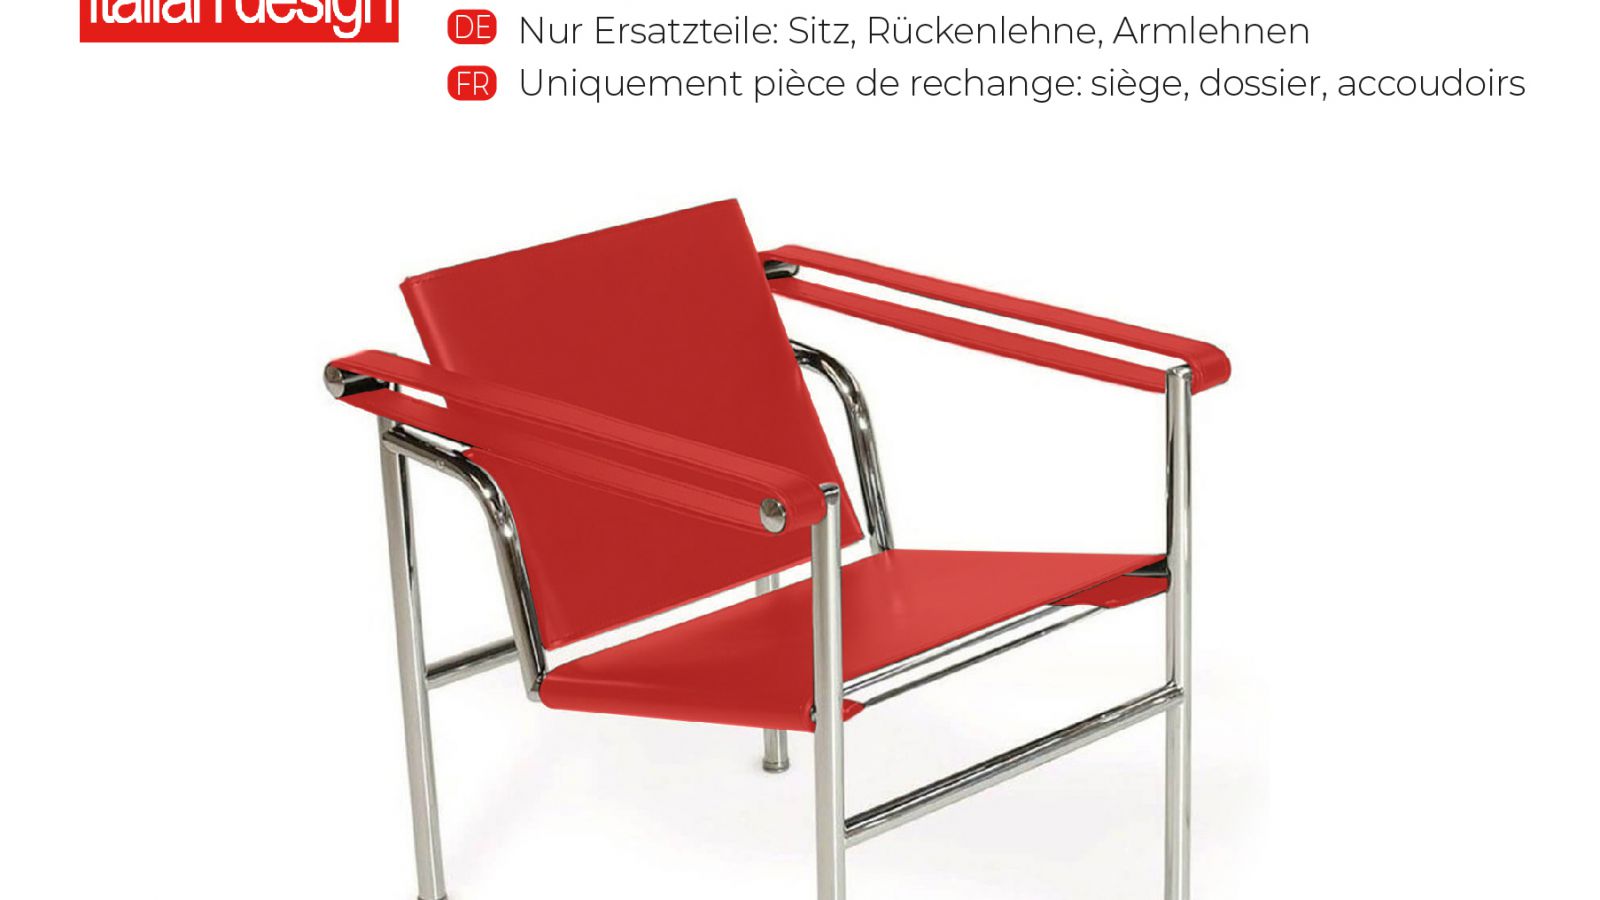 Kippen Sessel CO.02 - Leder-Ersatzteile - Italian Design Contract